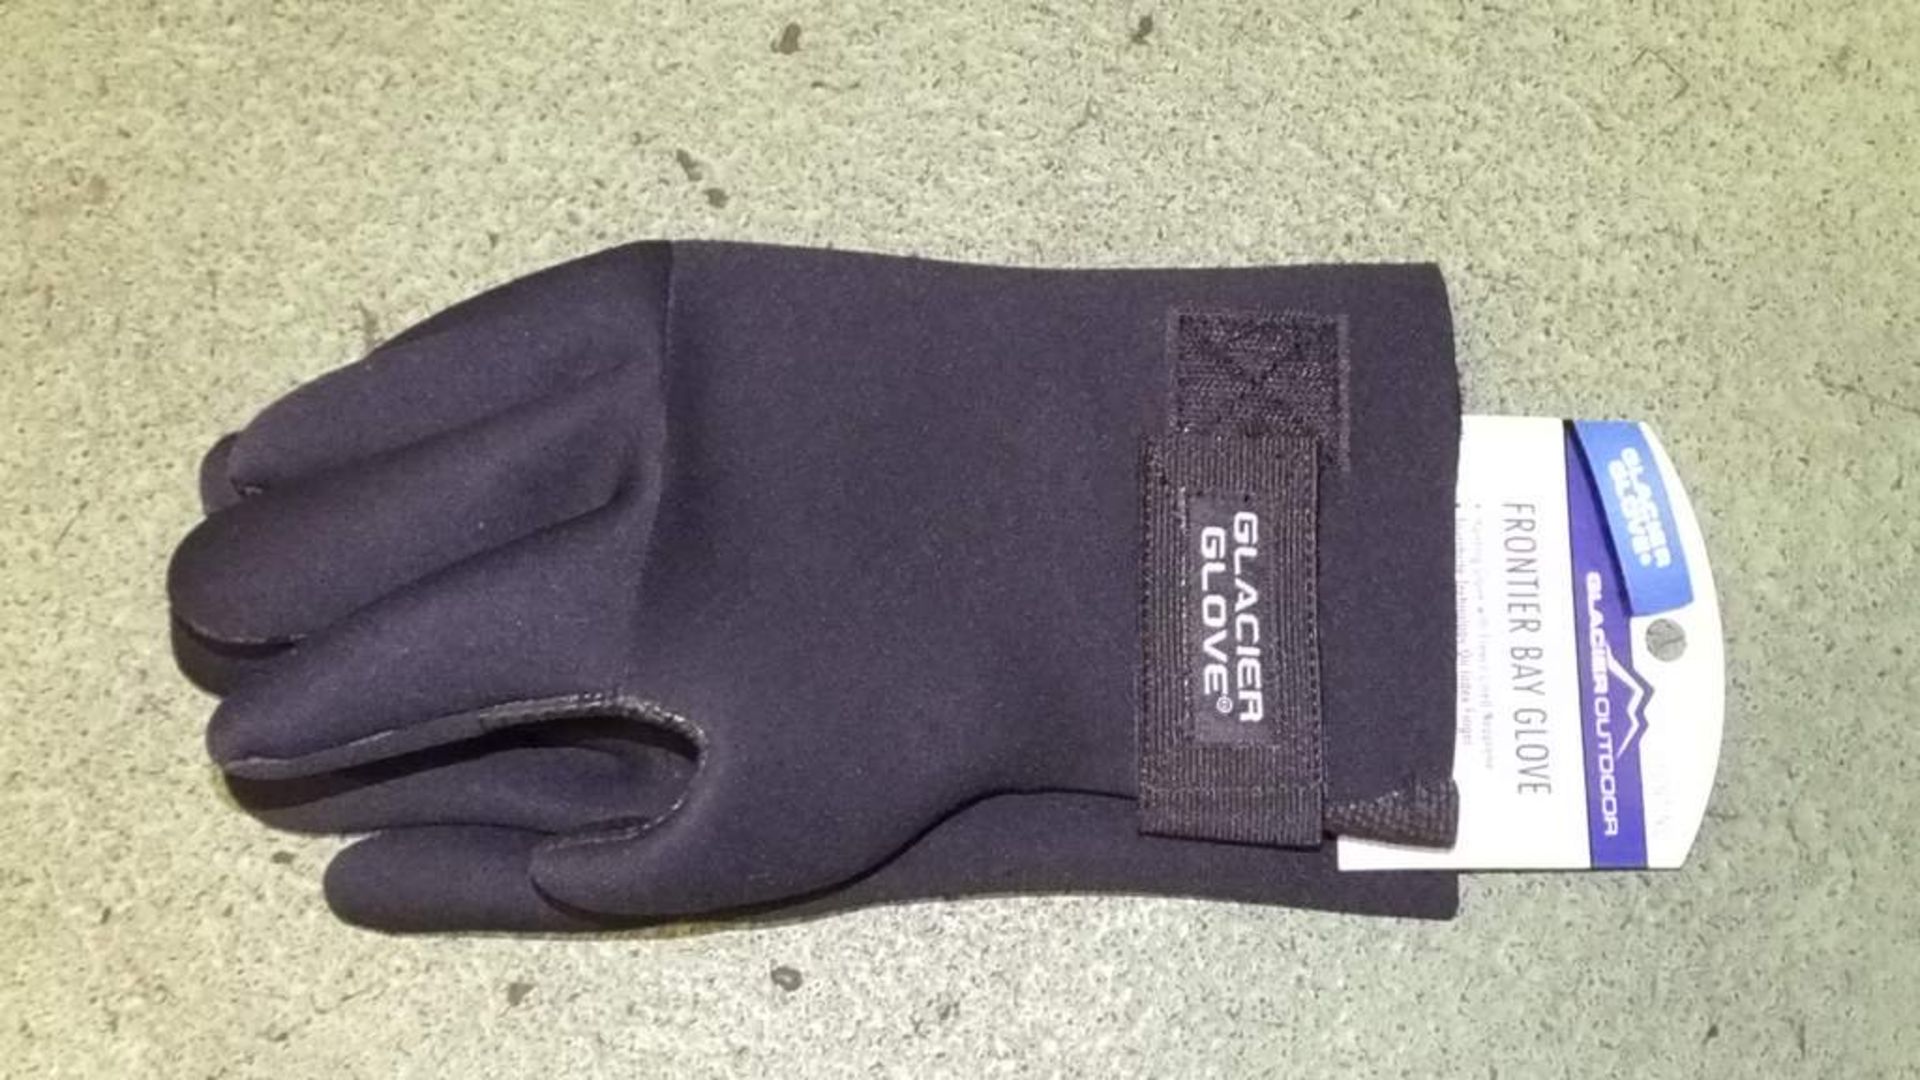 10x Glacier Neoprene gloves - Medium - Image 2 of 2